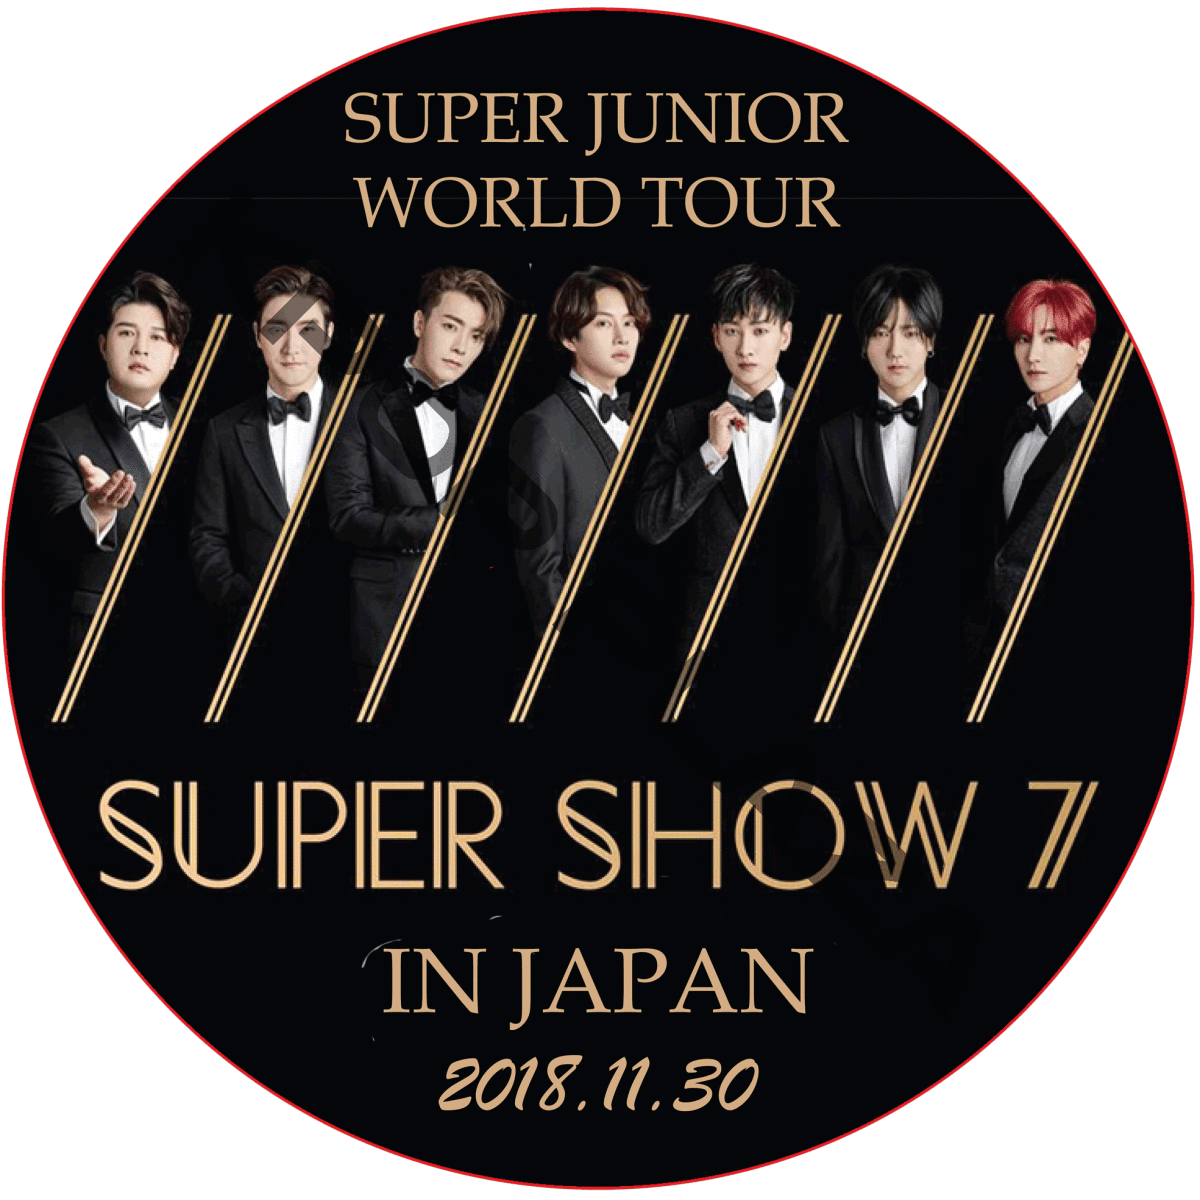 雅虎代拍-- SUPER JUNIOR WORLD TOUR SUPER SHOW 7 IN JAPAN / スーパージュニア